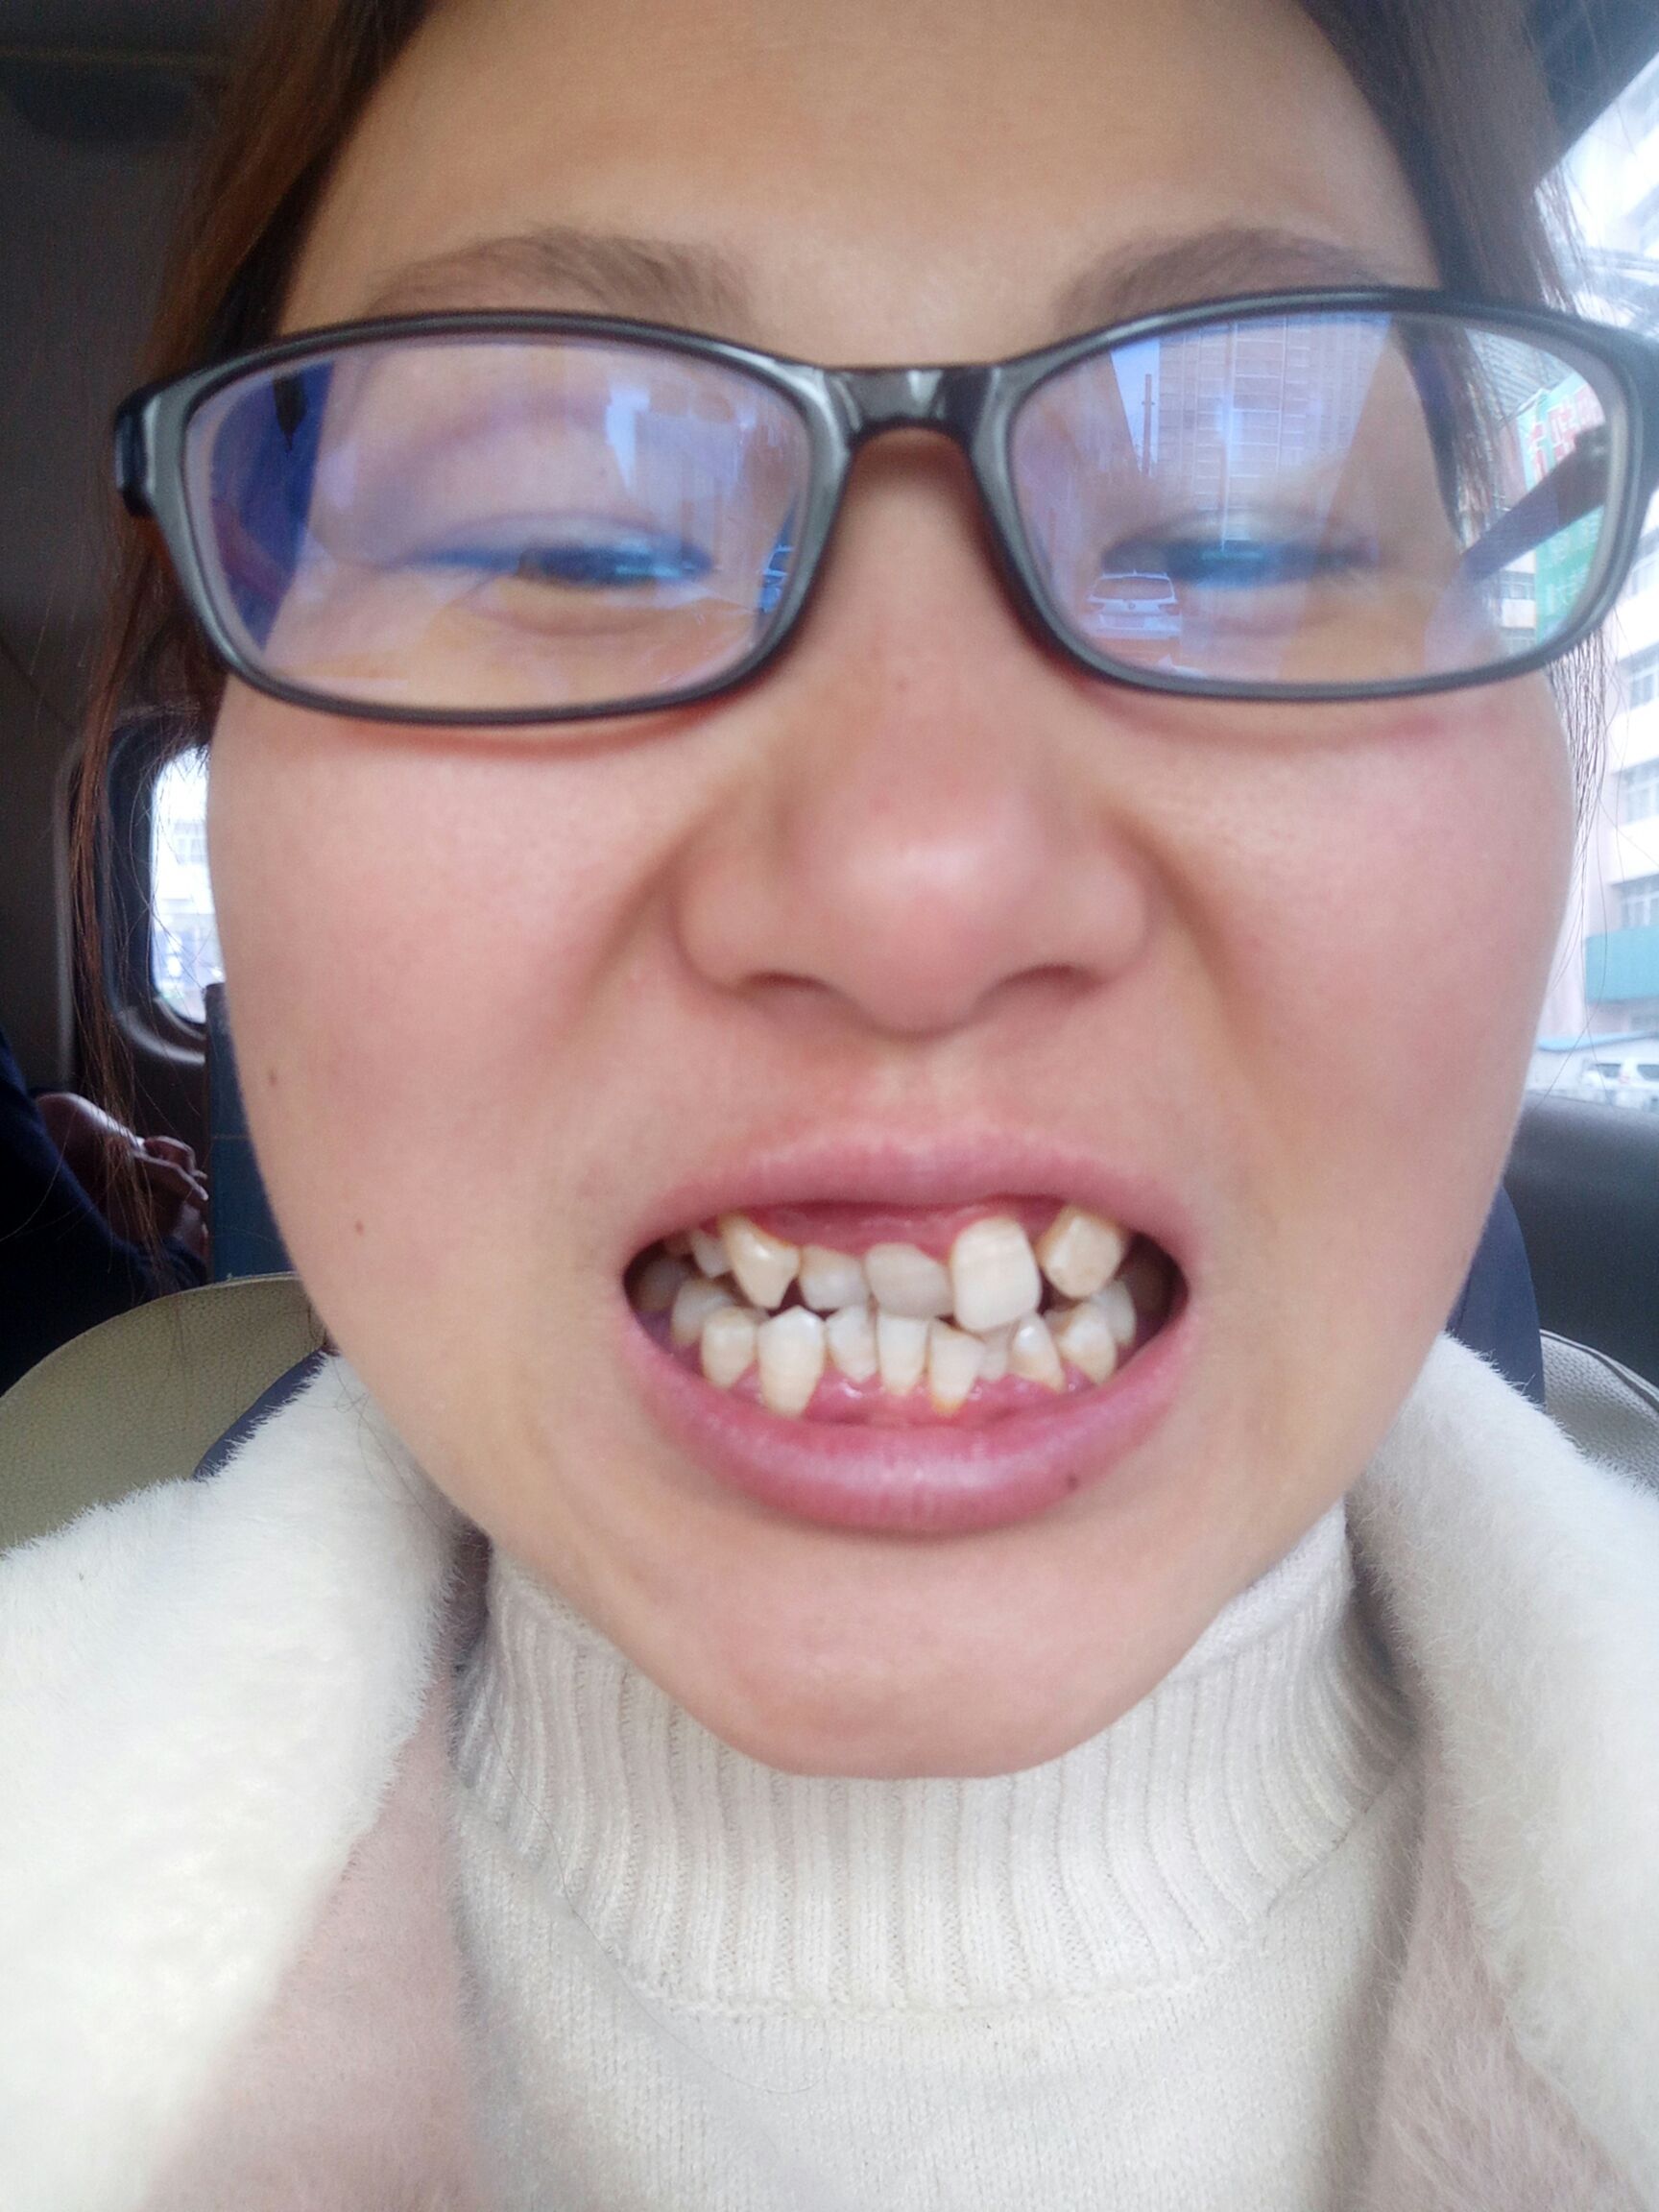 32岁老阿姨,牙齿超级歪扭,准备矫正